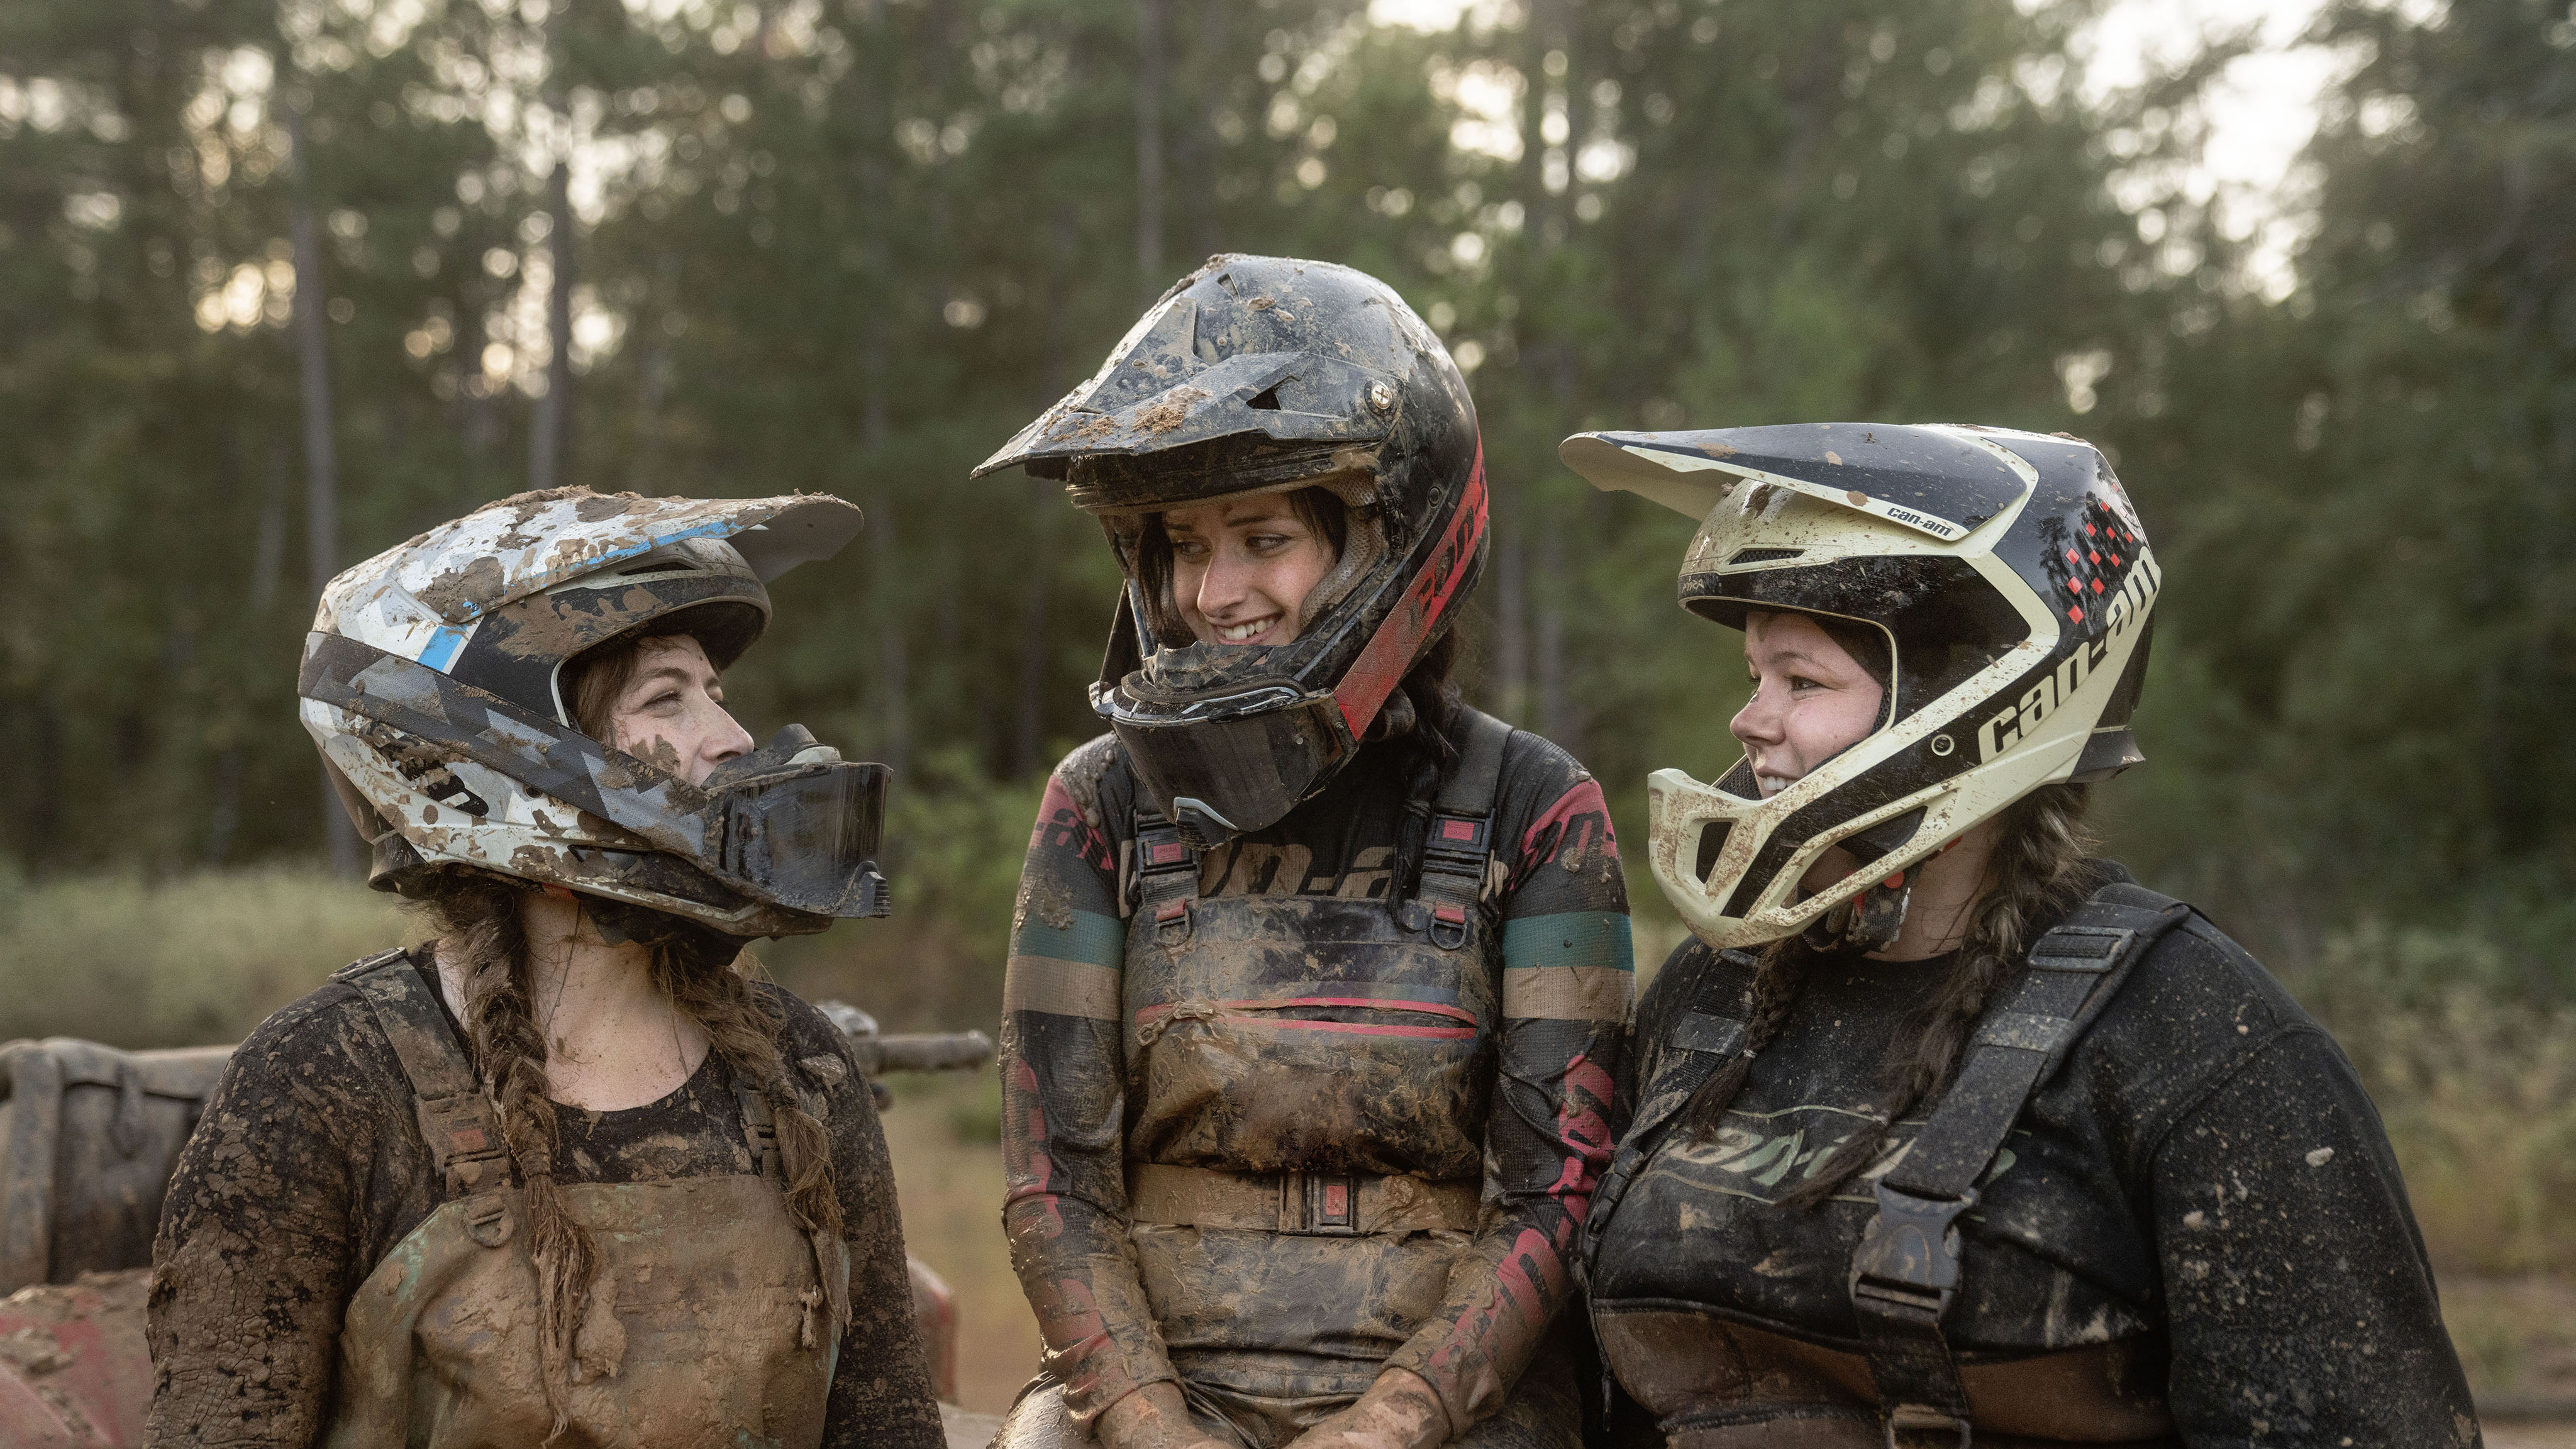 三位 ATV 女车手戴着 Can-Am Pyra 头盔和 Can-Am Flint Dune 护目镜。